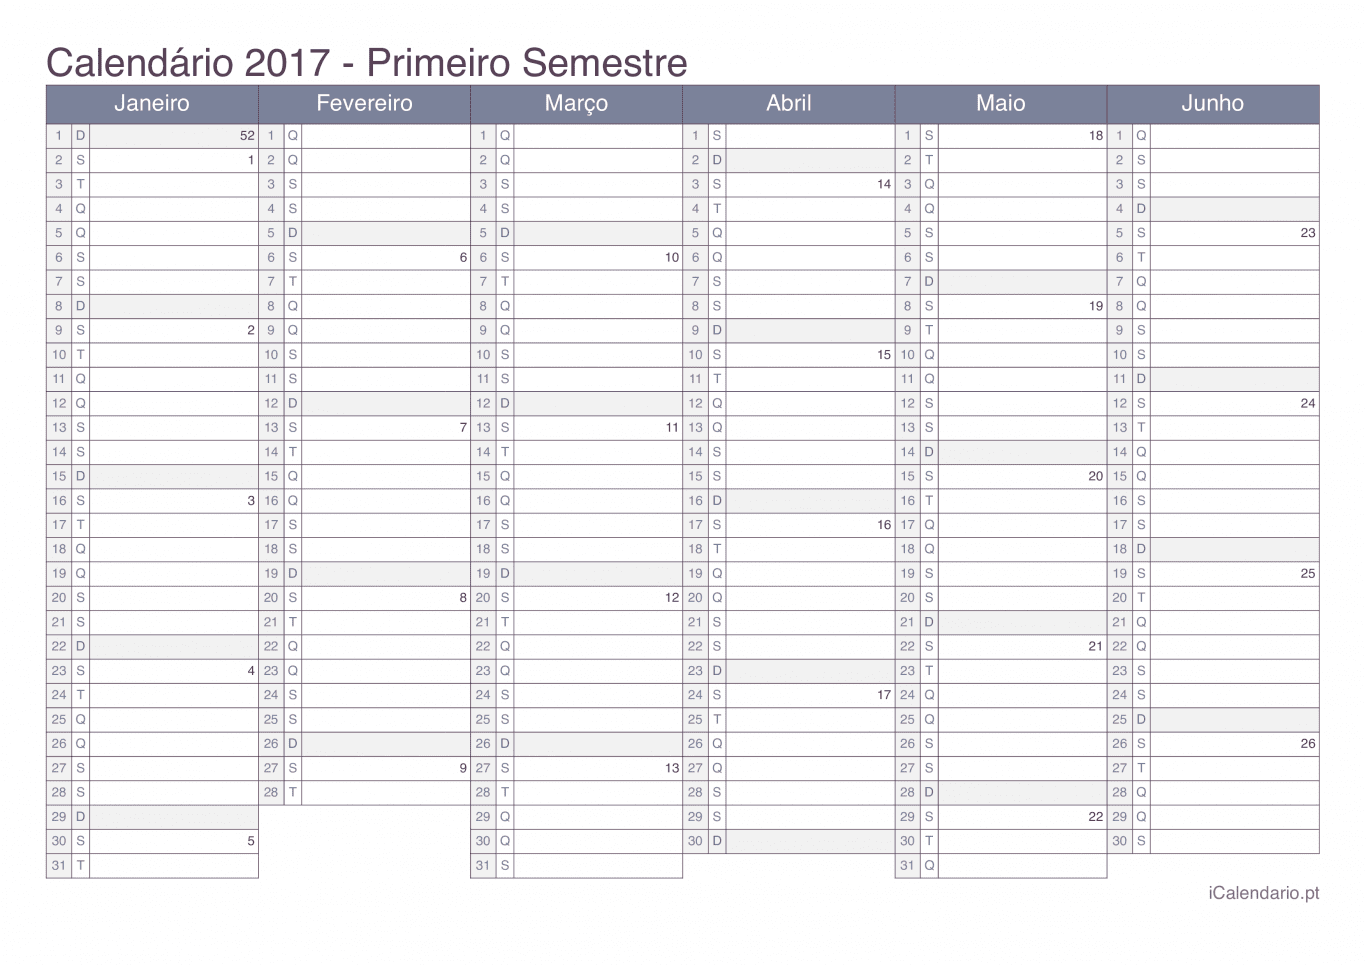 Calendário por semestre com números da semana 2017 - Office